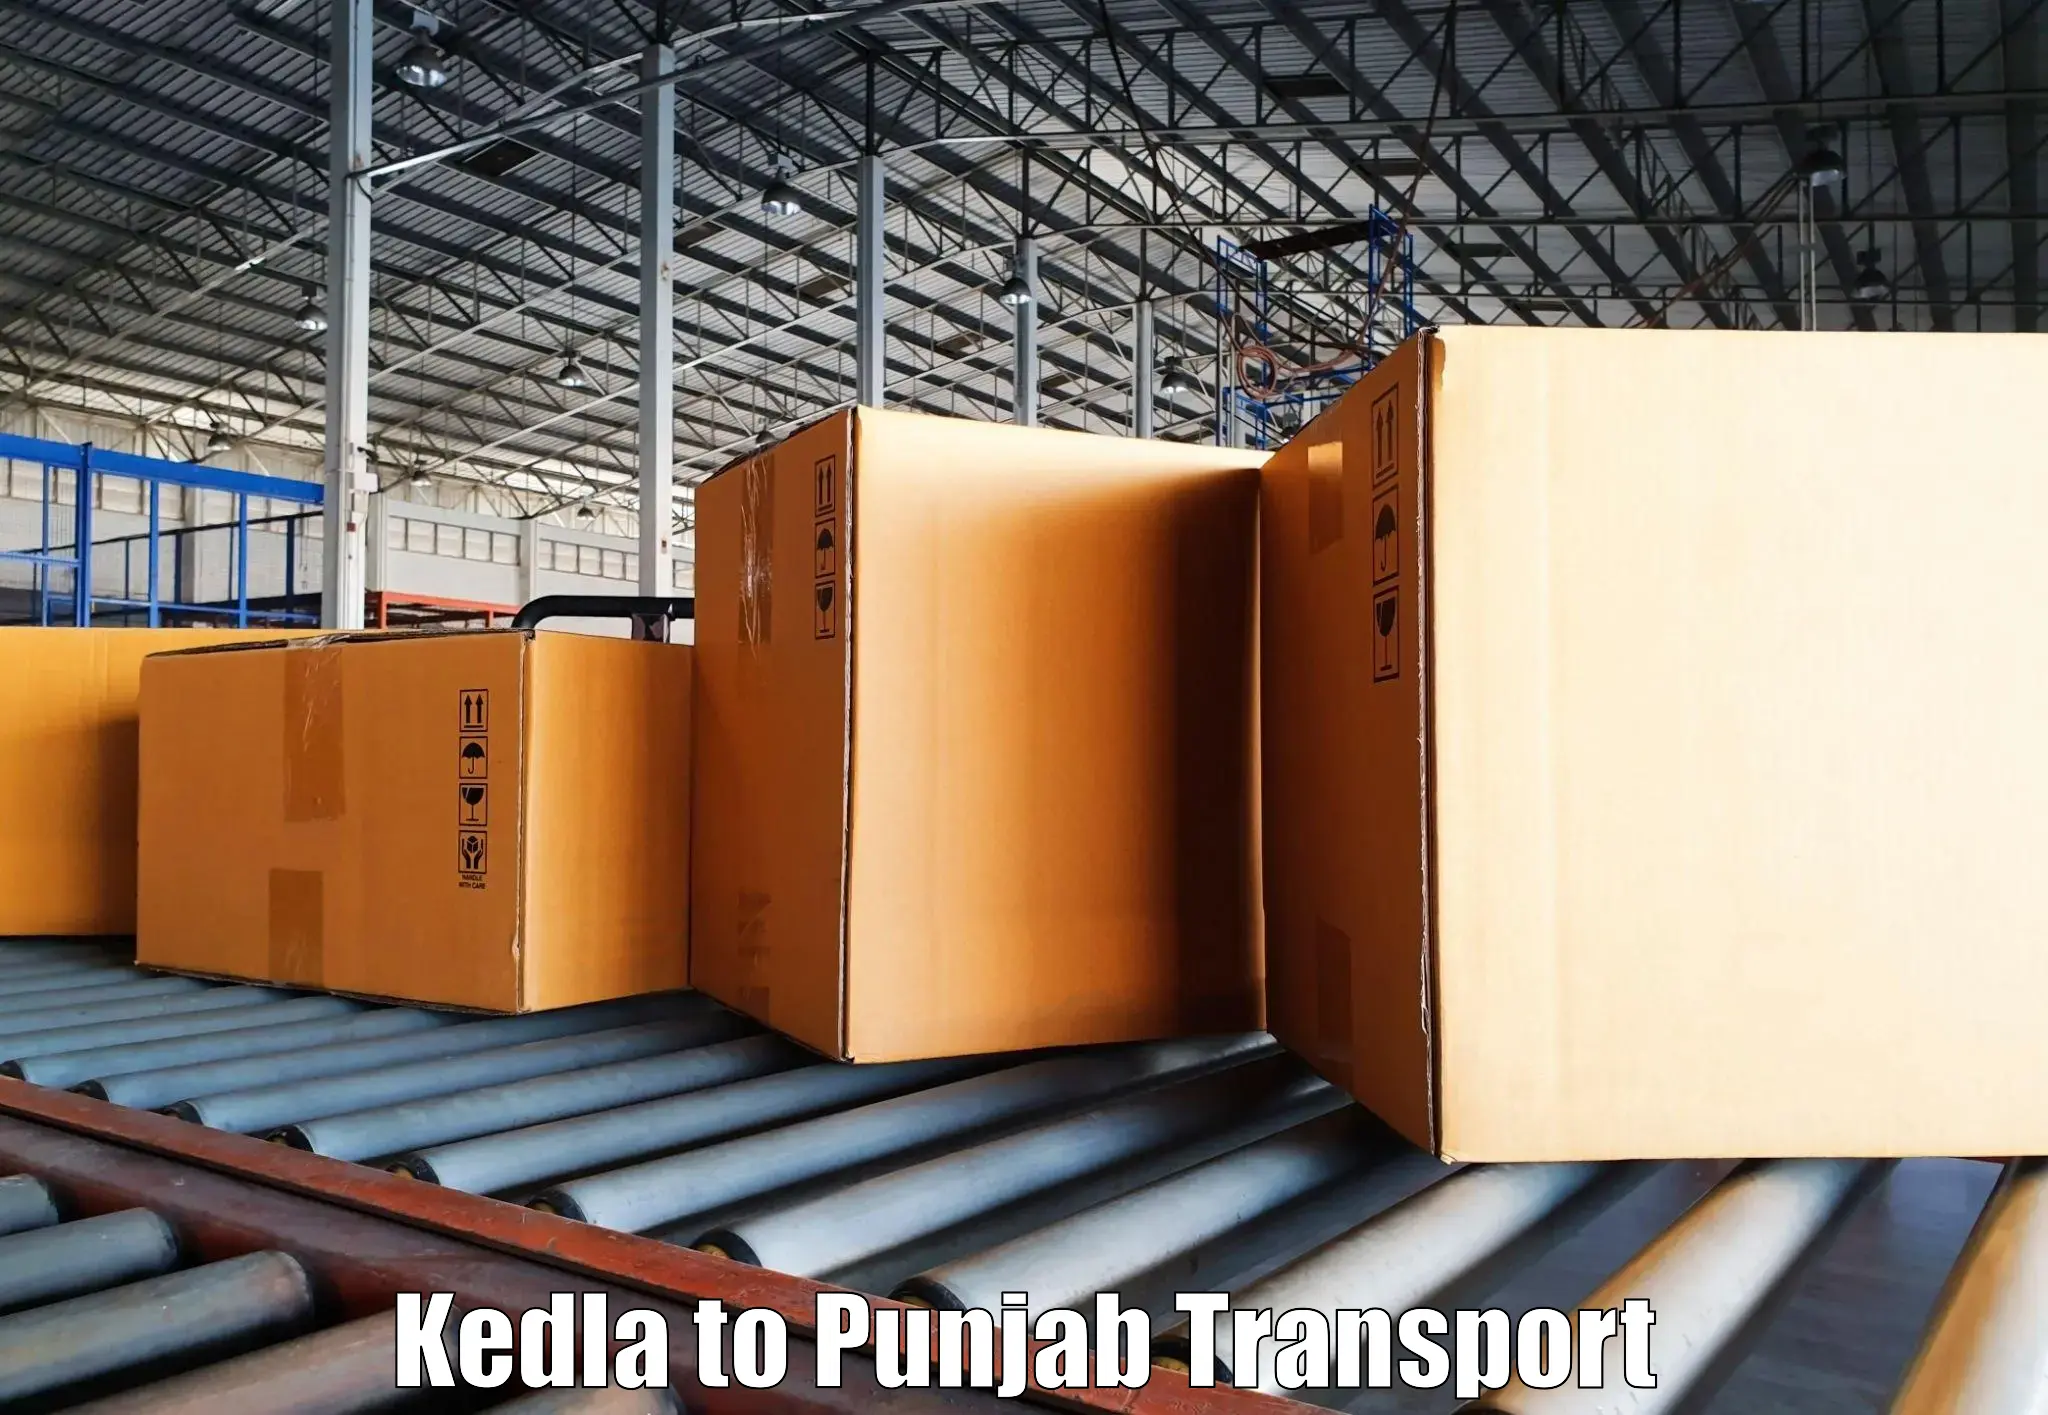 Road transport online services Kedla to Begowal